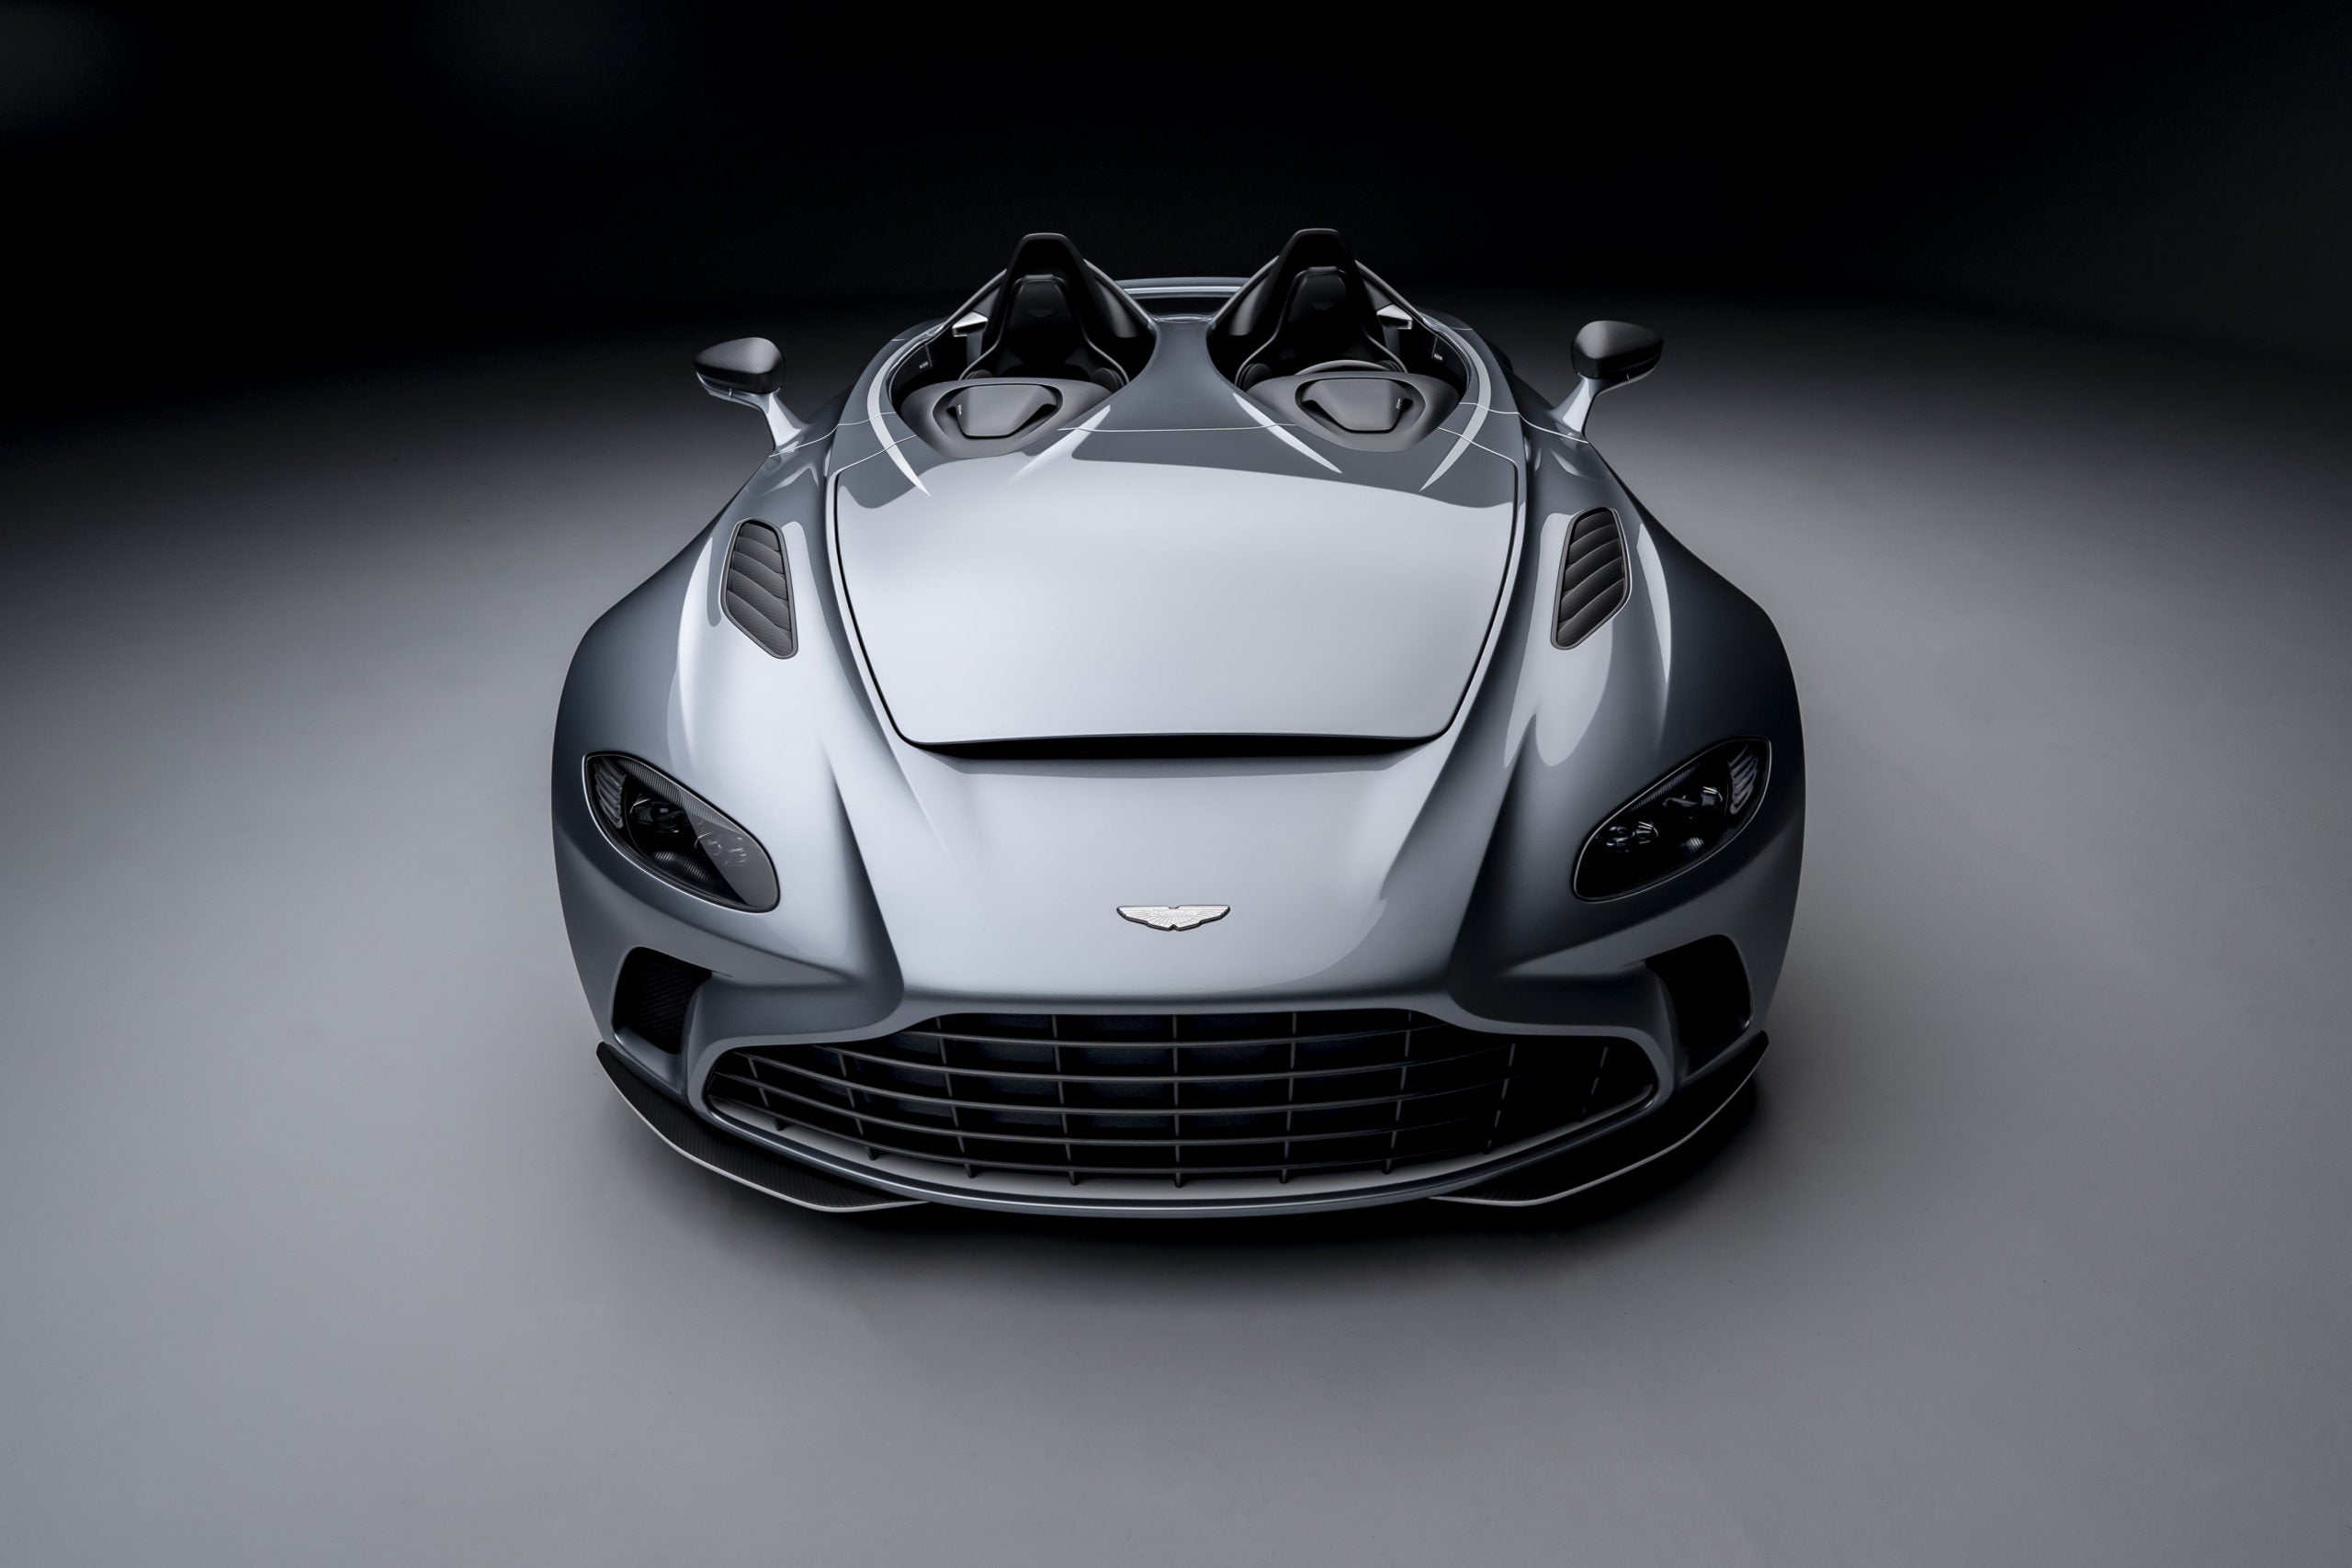 Buscando renovação, Aston Martin lança moto de US$ 120.000